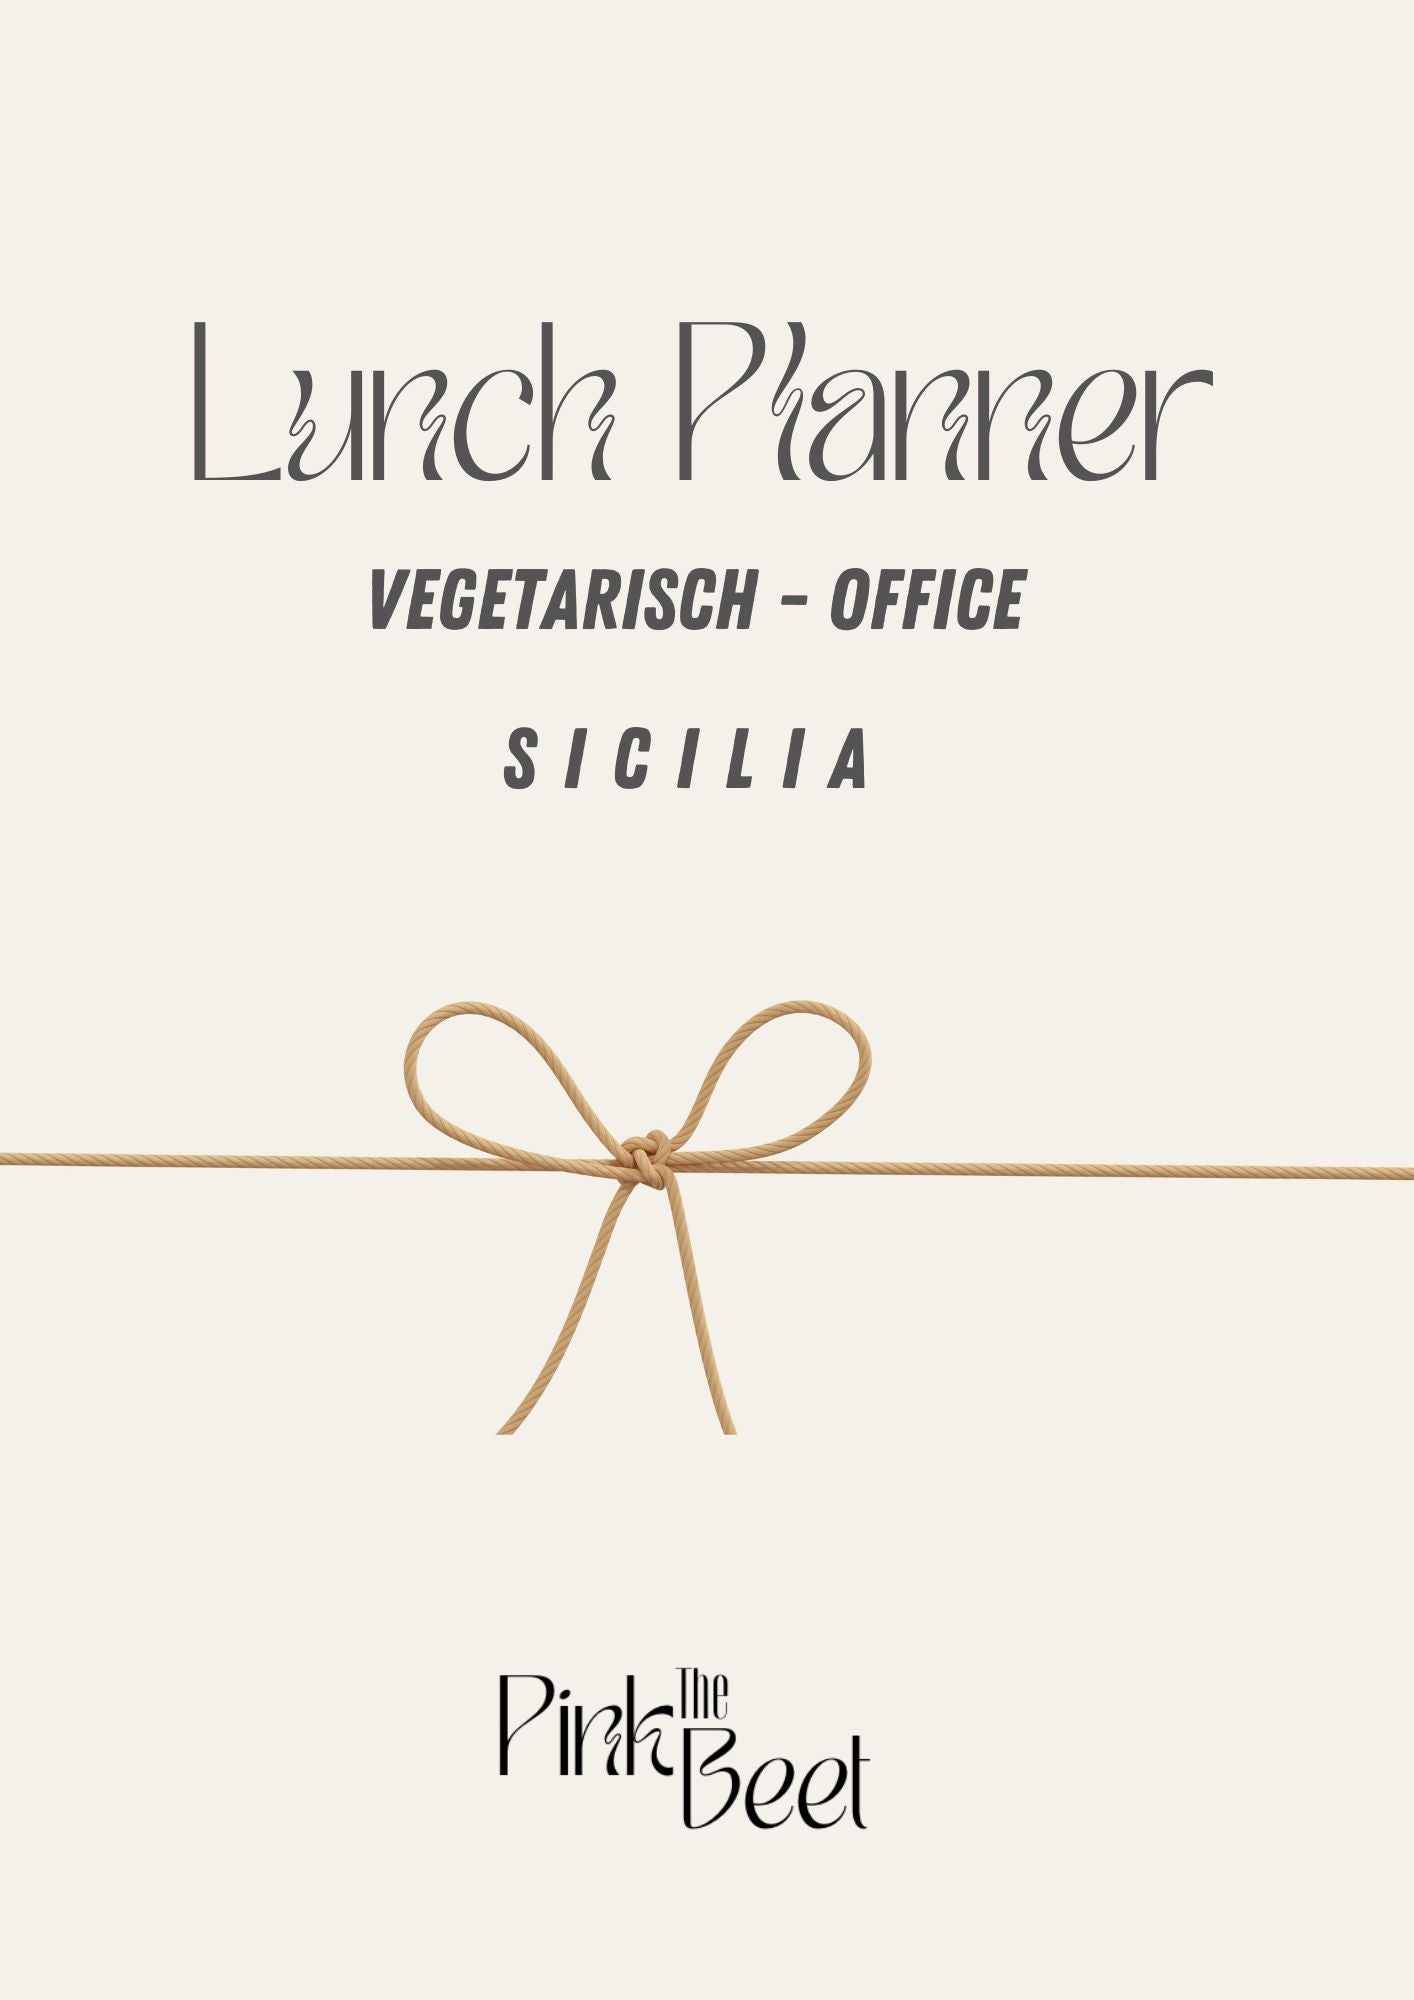 Lunch Planner Vegetarisch- OFFICE| SICILIA 🌱